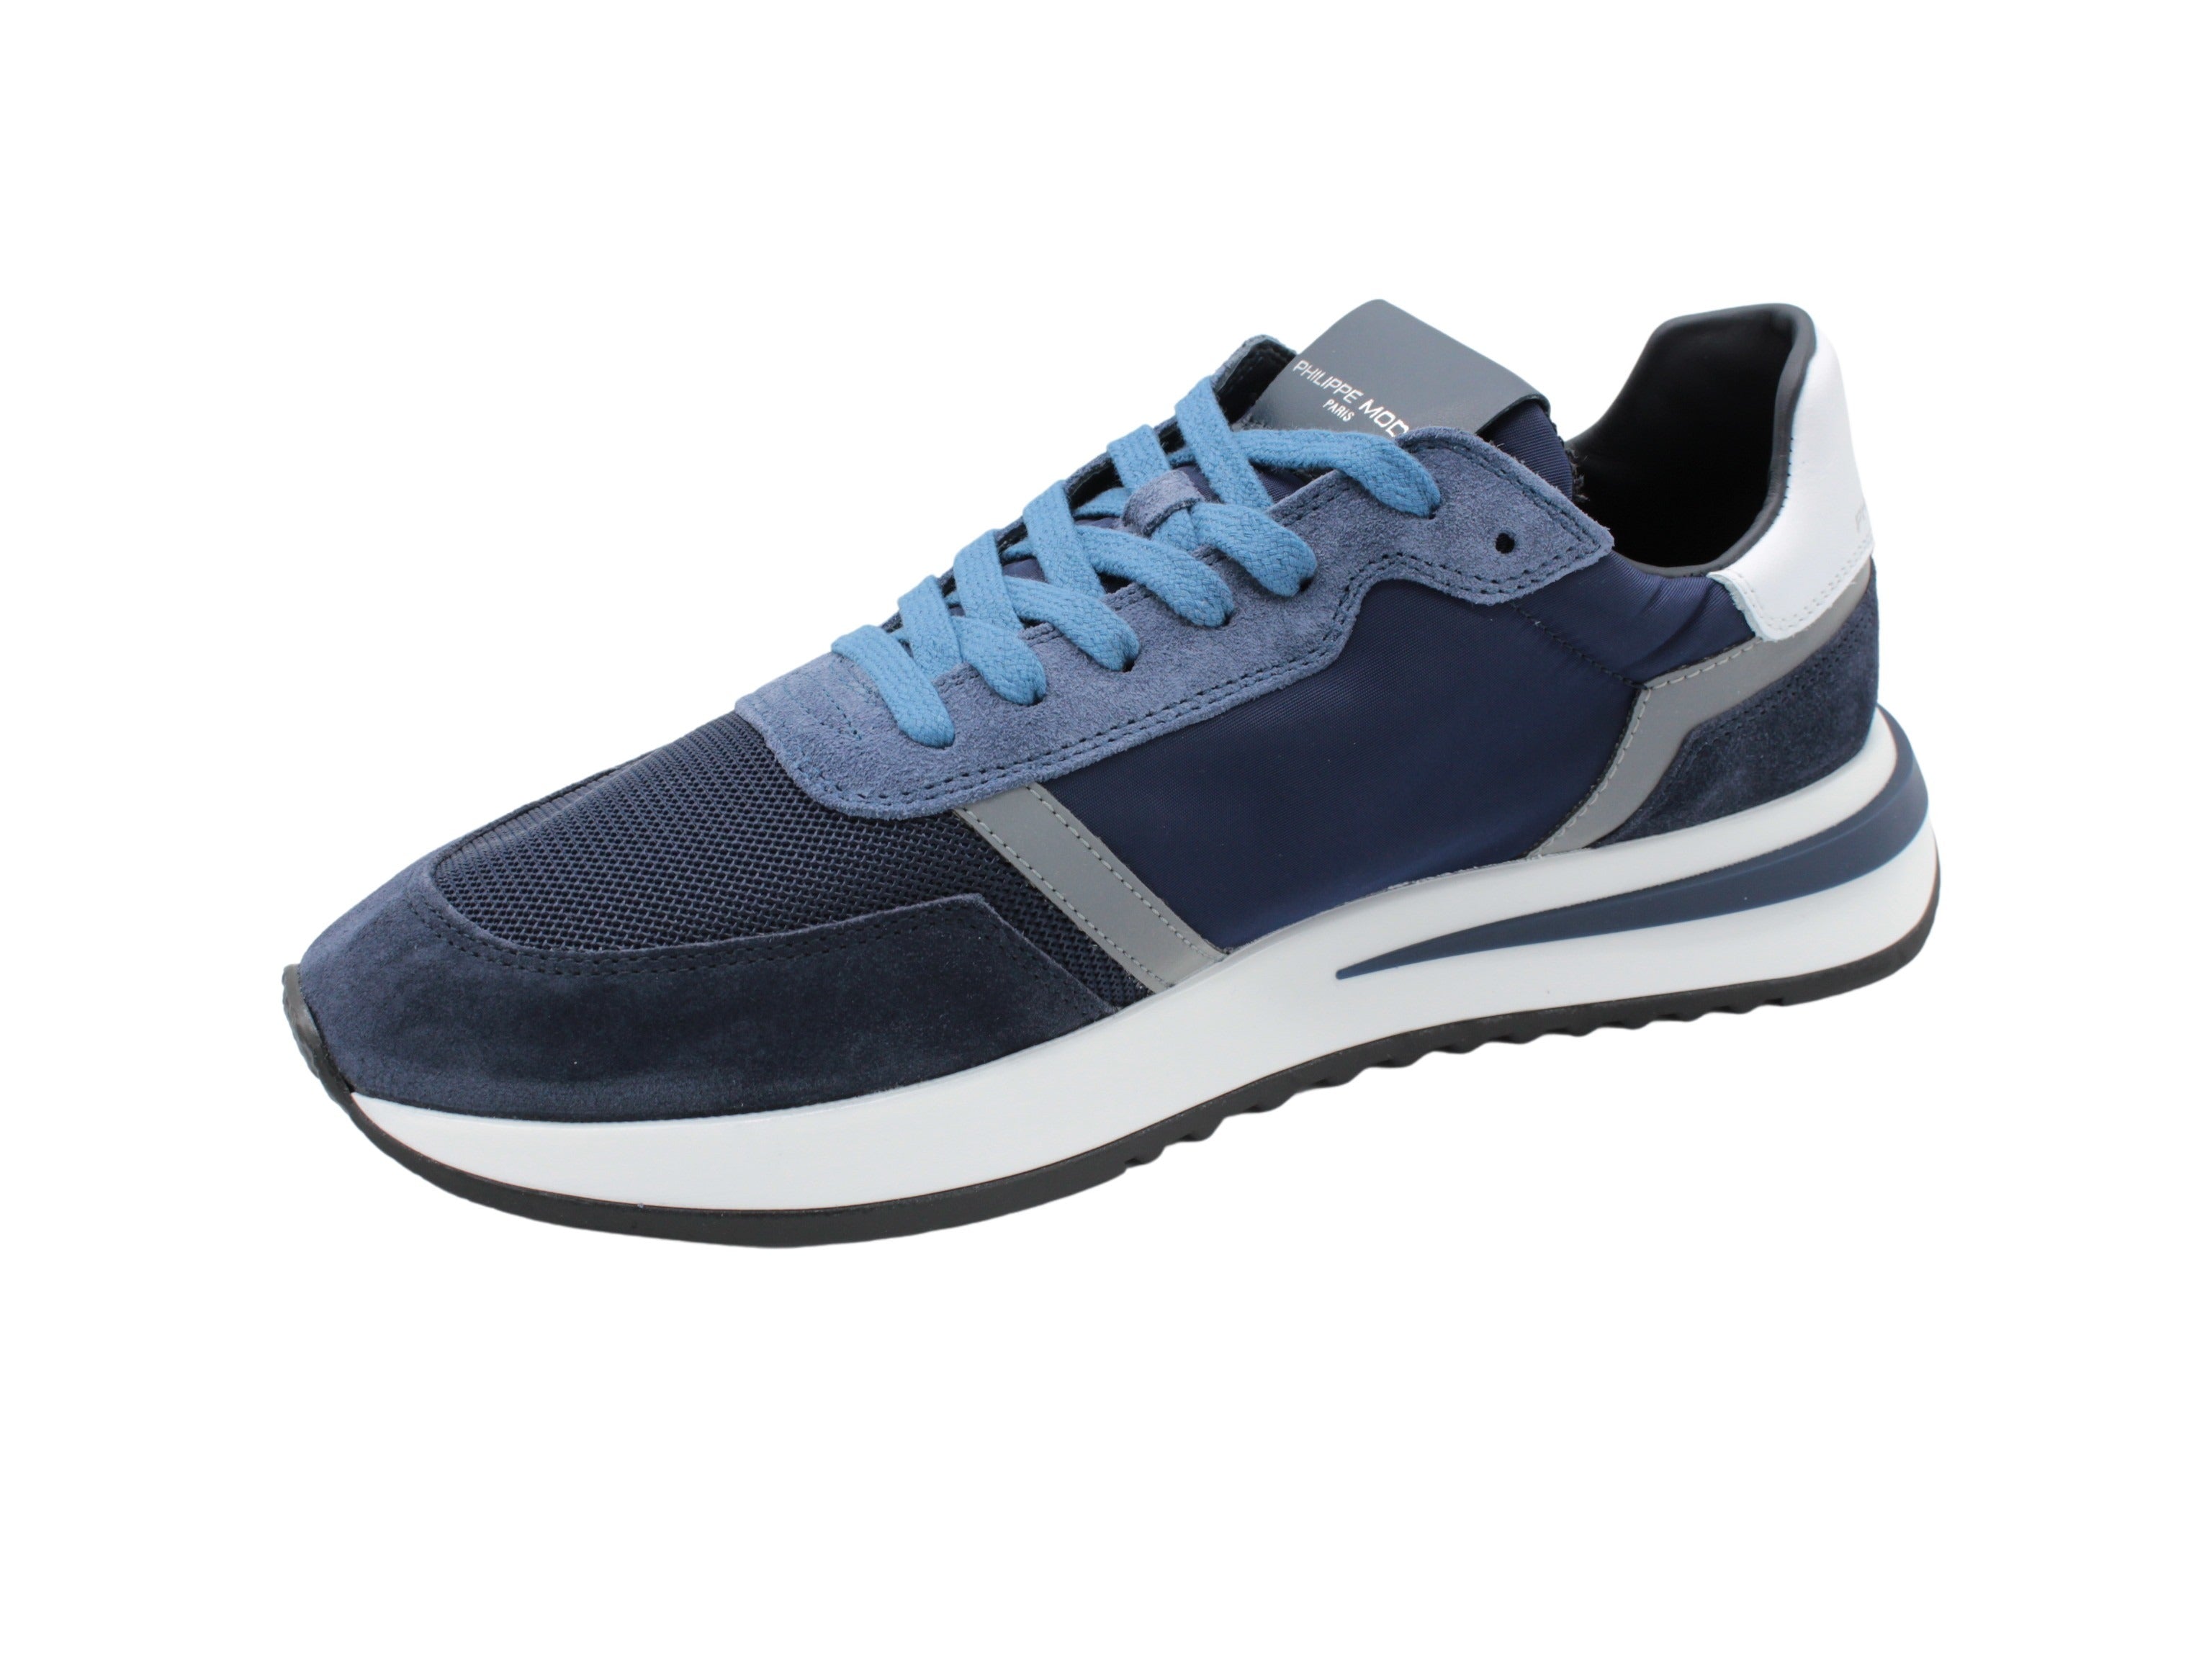 Tropez 2.1 Tyluw019 blue sneaker